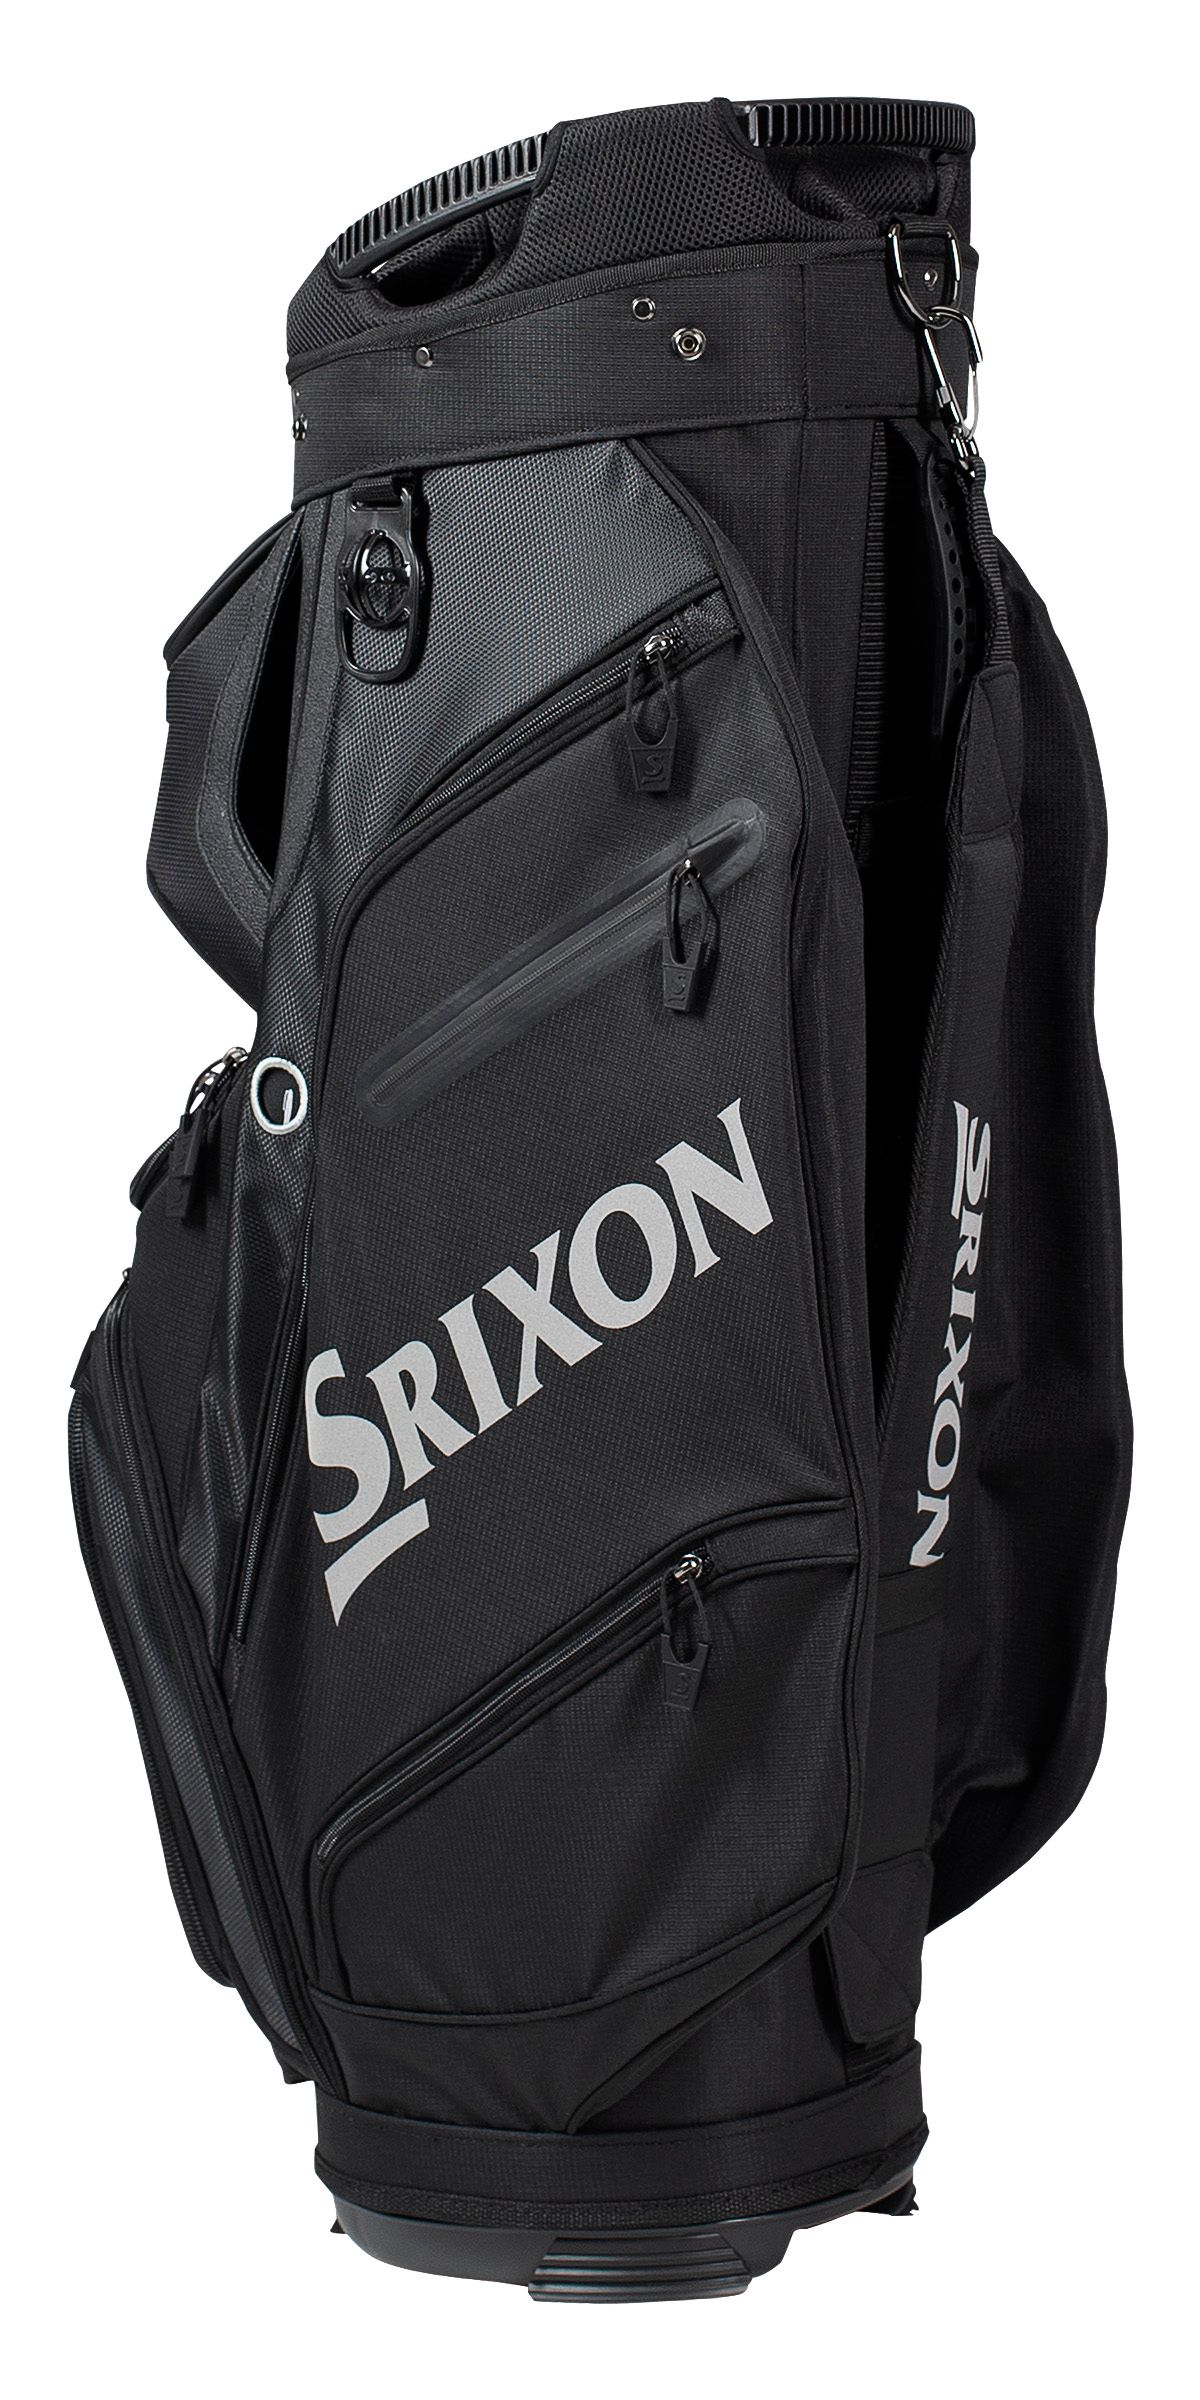 Srixon Golf Cart Bag  BLACK - zvìtšit obrázek